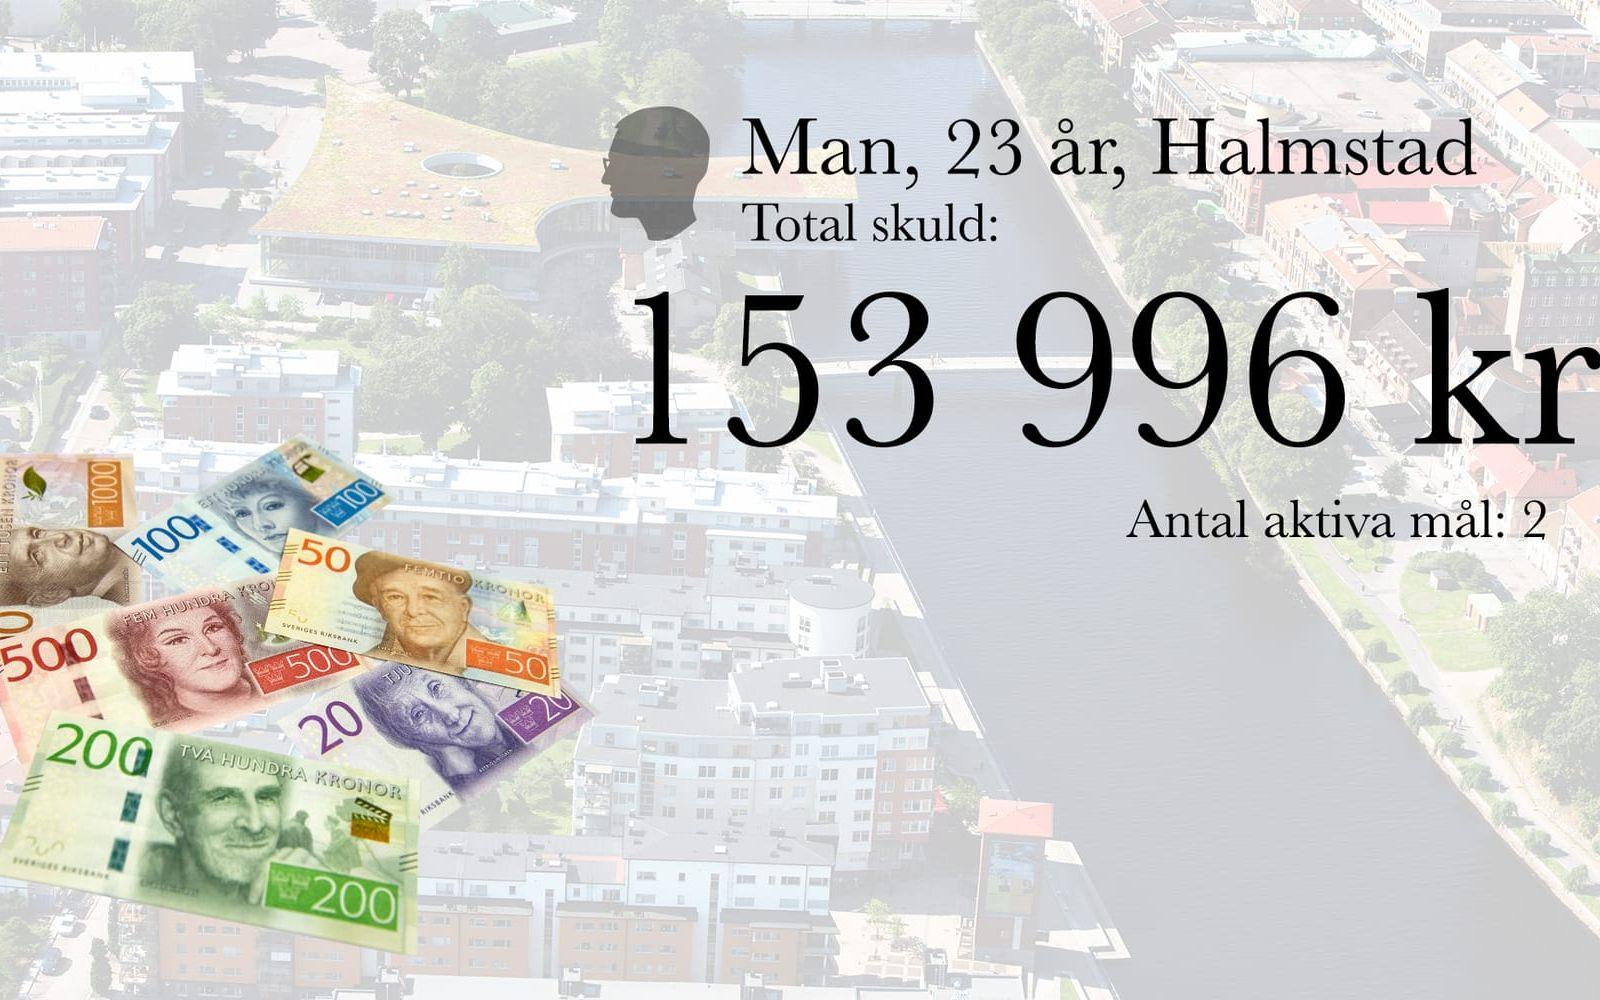 13. Man, 23 år, Halmstad. Total skuld: 153 996 kronor. Antal aktiva mål: 2.
